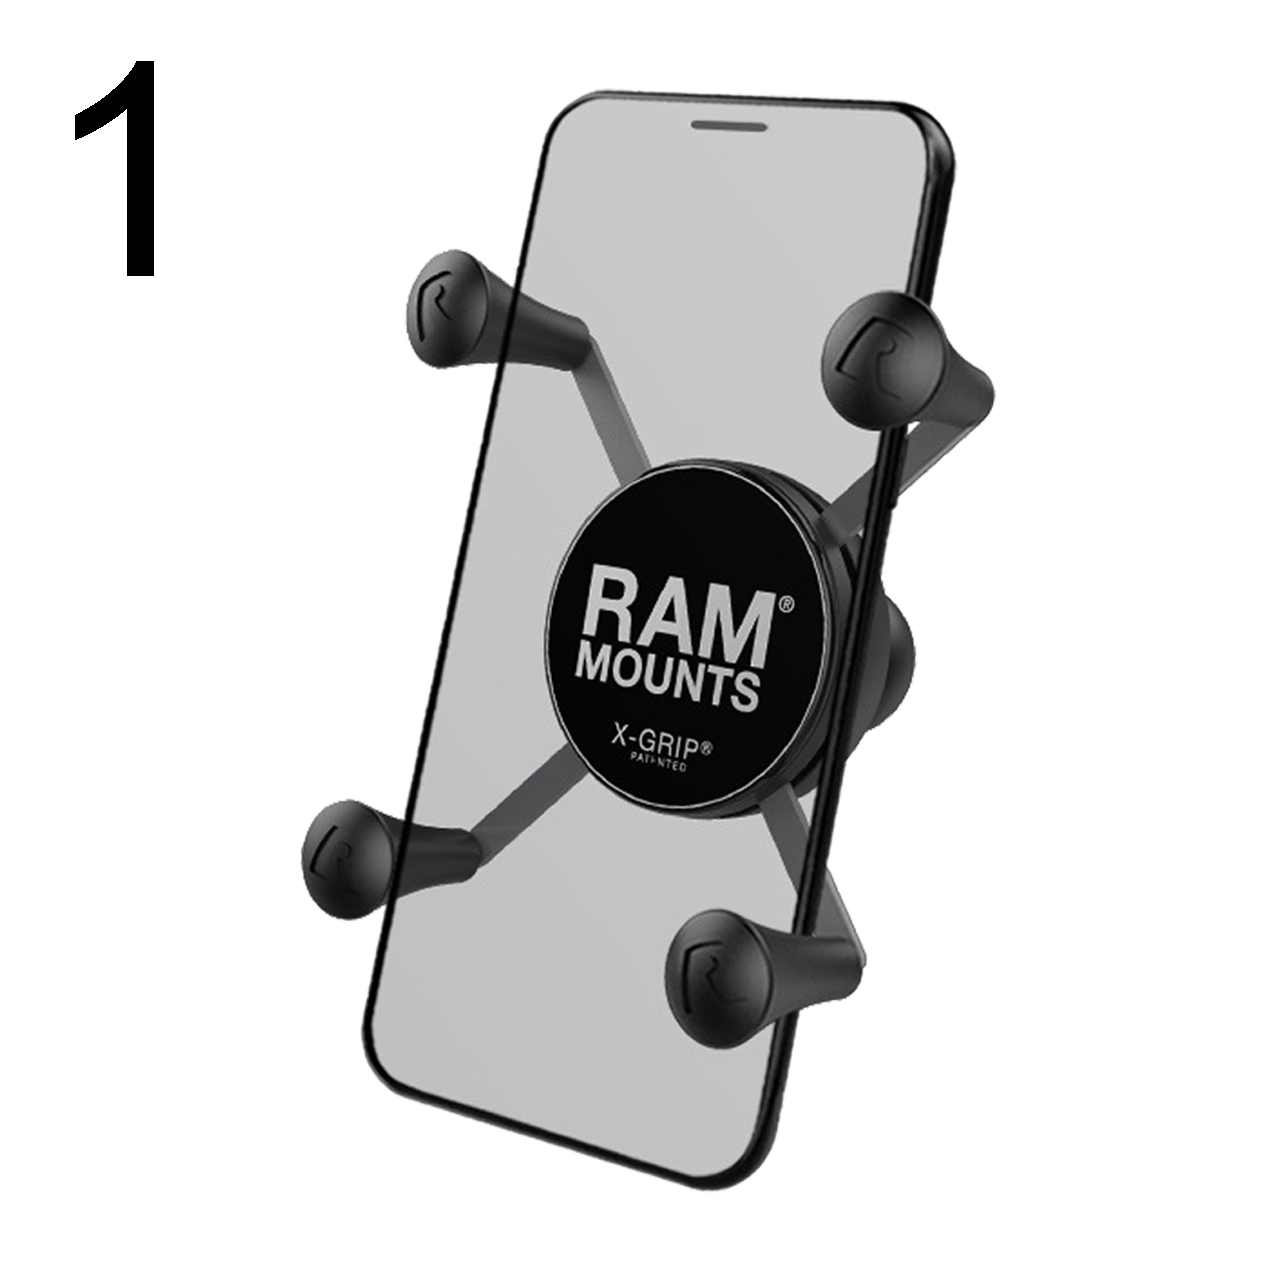 Telefonhalter RAM® Mounts X-Grip® - Jetzt 21% Ersparnis